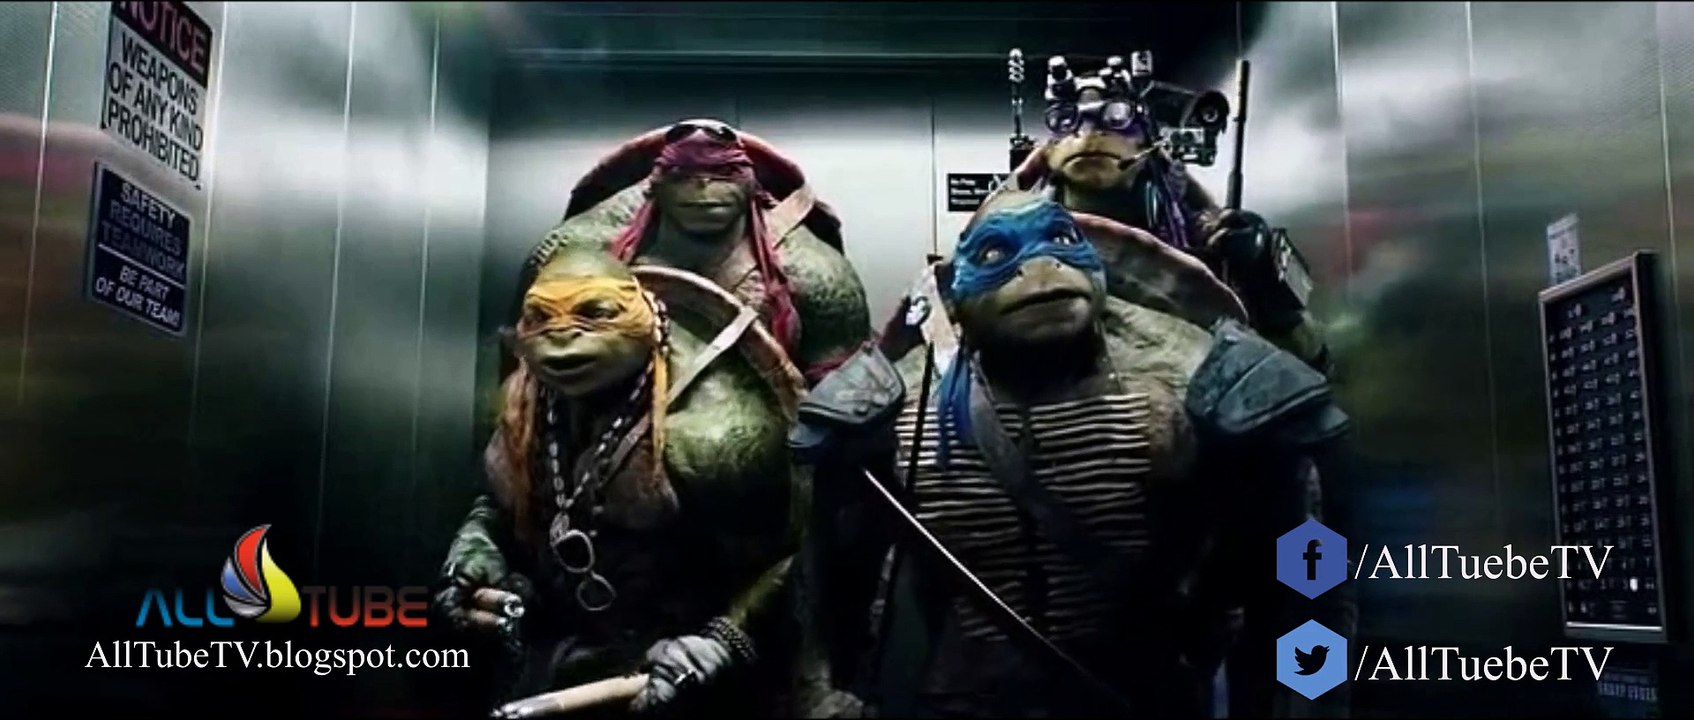 Teenage Mutant Ninja Turtles (2014 Movie) (Official) @AllTubeTV